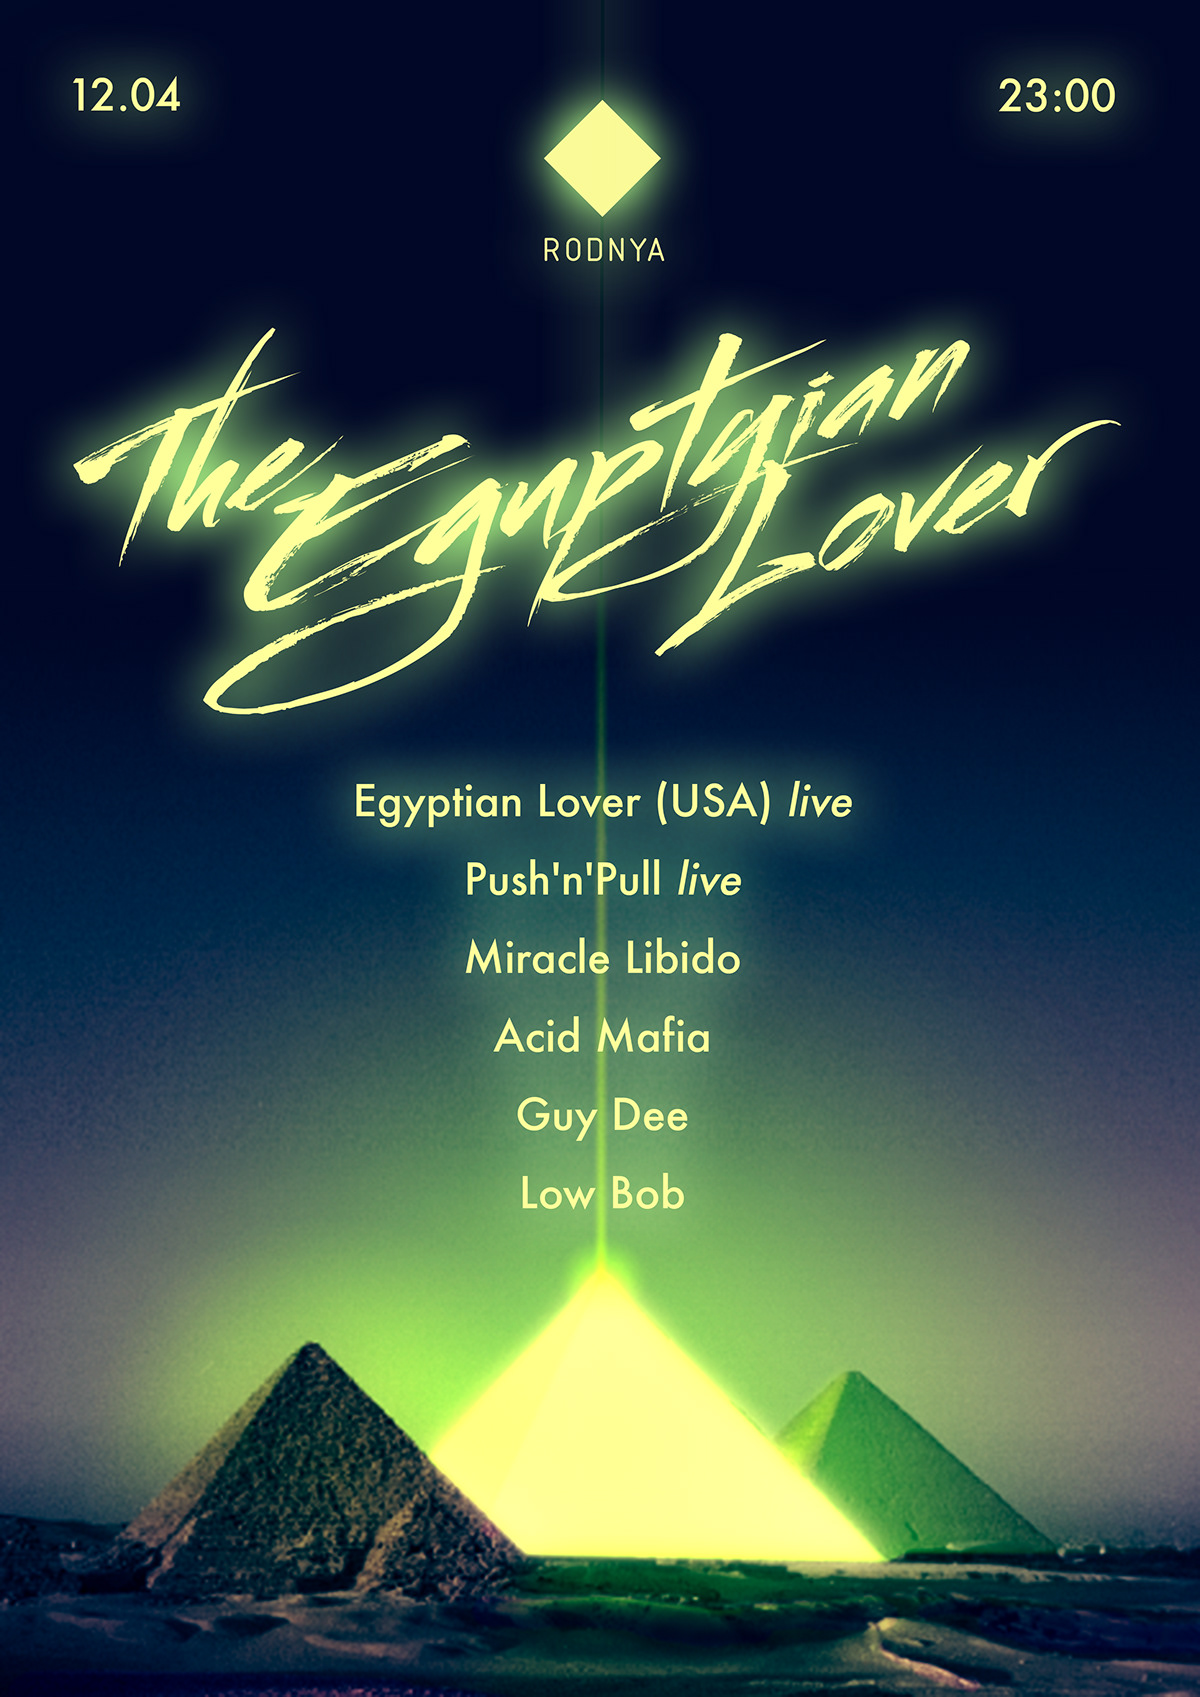 rodnya egyptian lover poster facebook cover